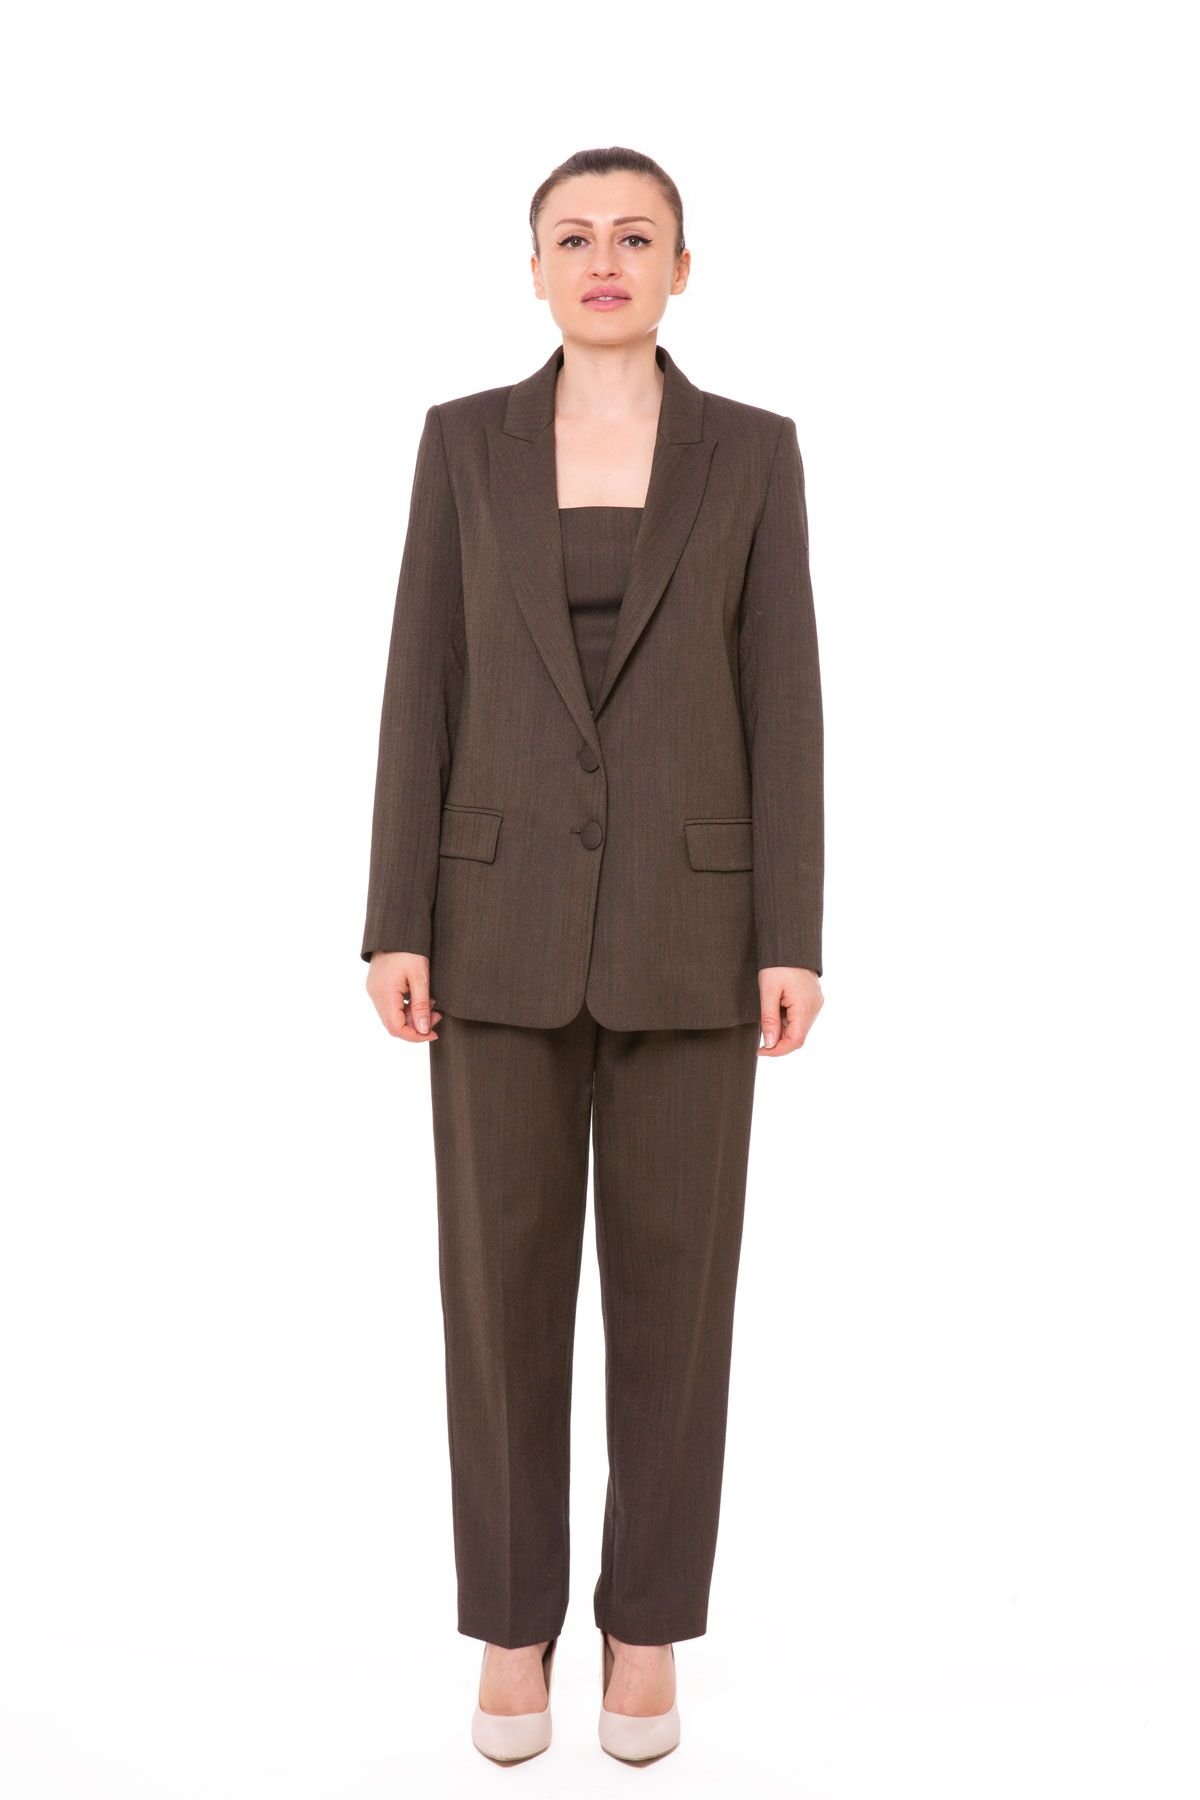 Top Bluzlu Üçlü Kahverengi Kadın Takım Elbise